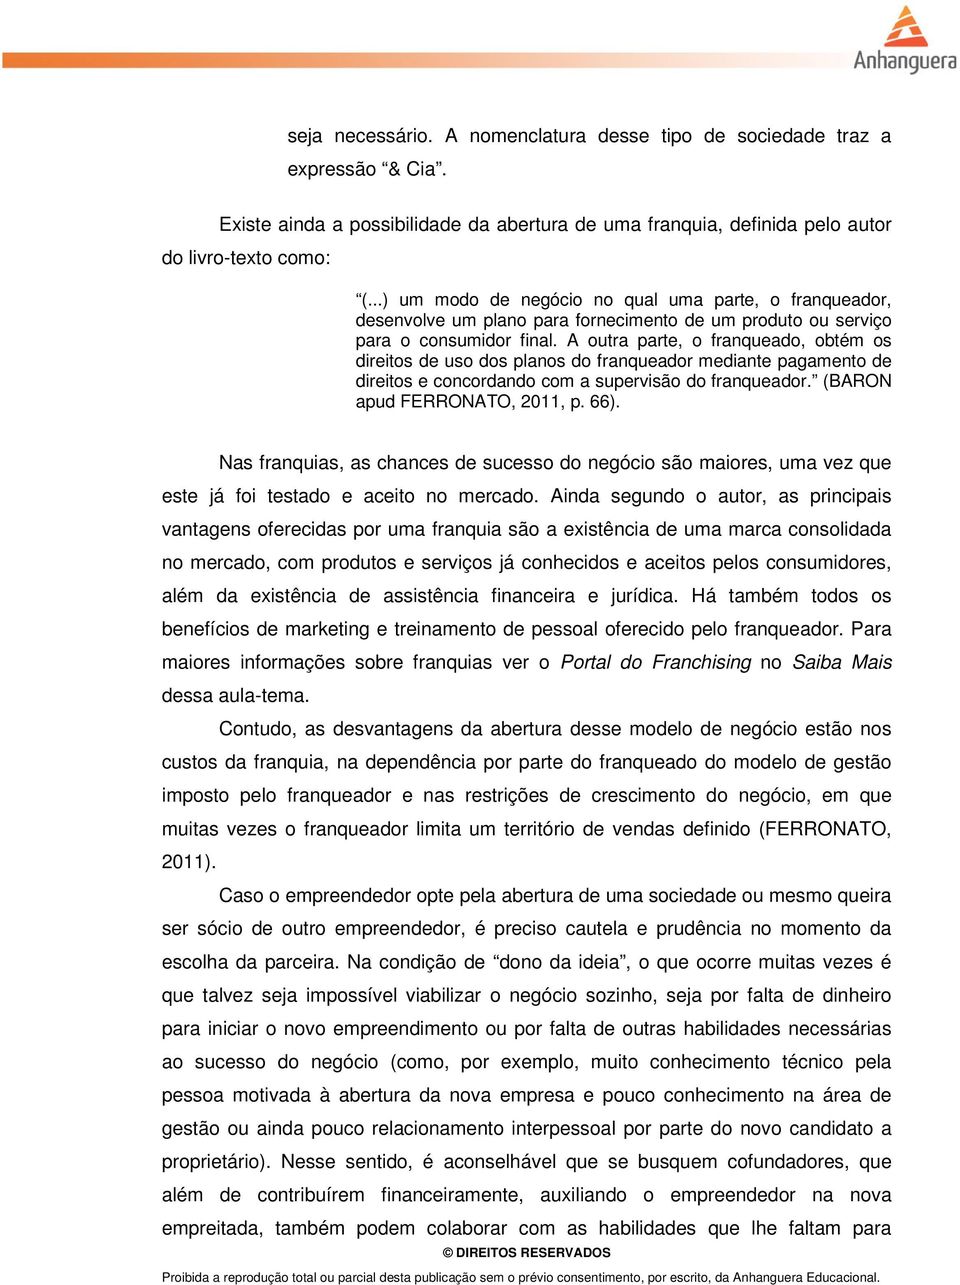 A outra parte, o franqueado, obtém os direitos de uso dos planos do franqueador mediante pagamento de direitos e concordando com a supervisão do franqueador. (BARON apud FERRONATO, 2011, p. 66).